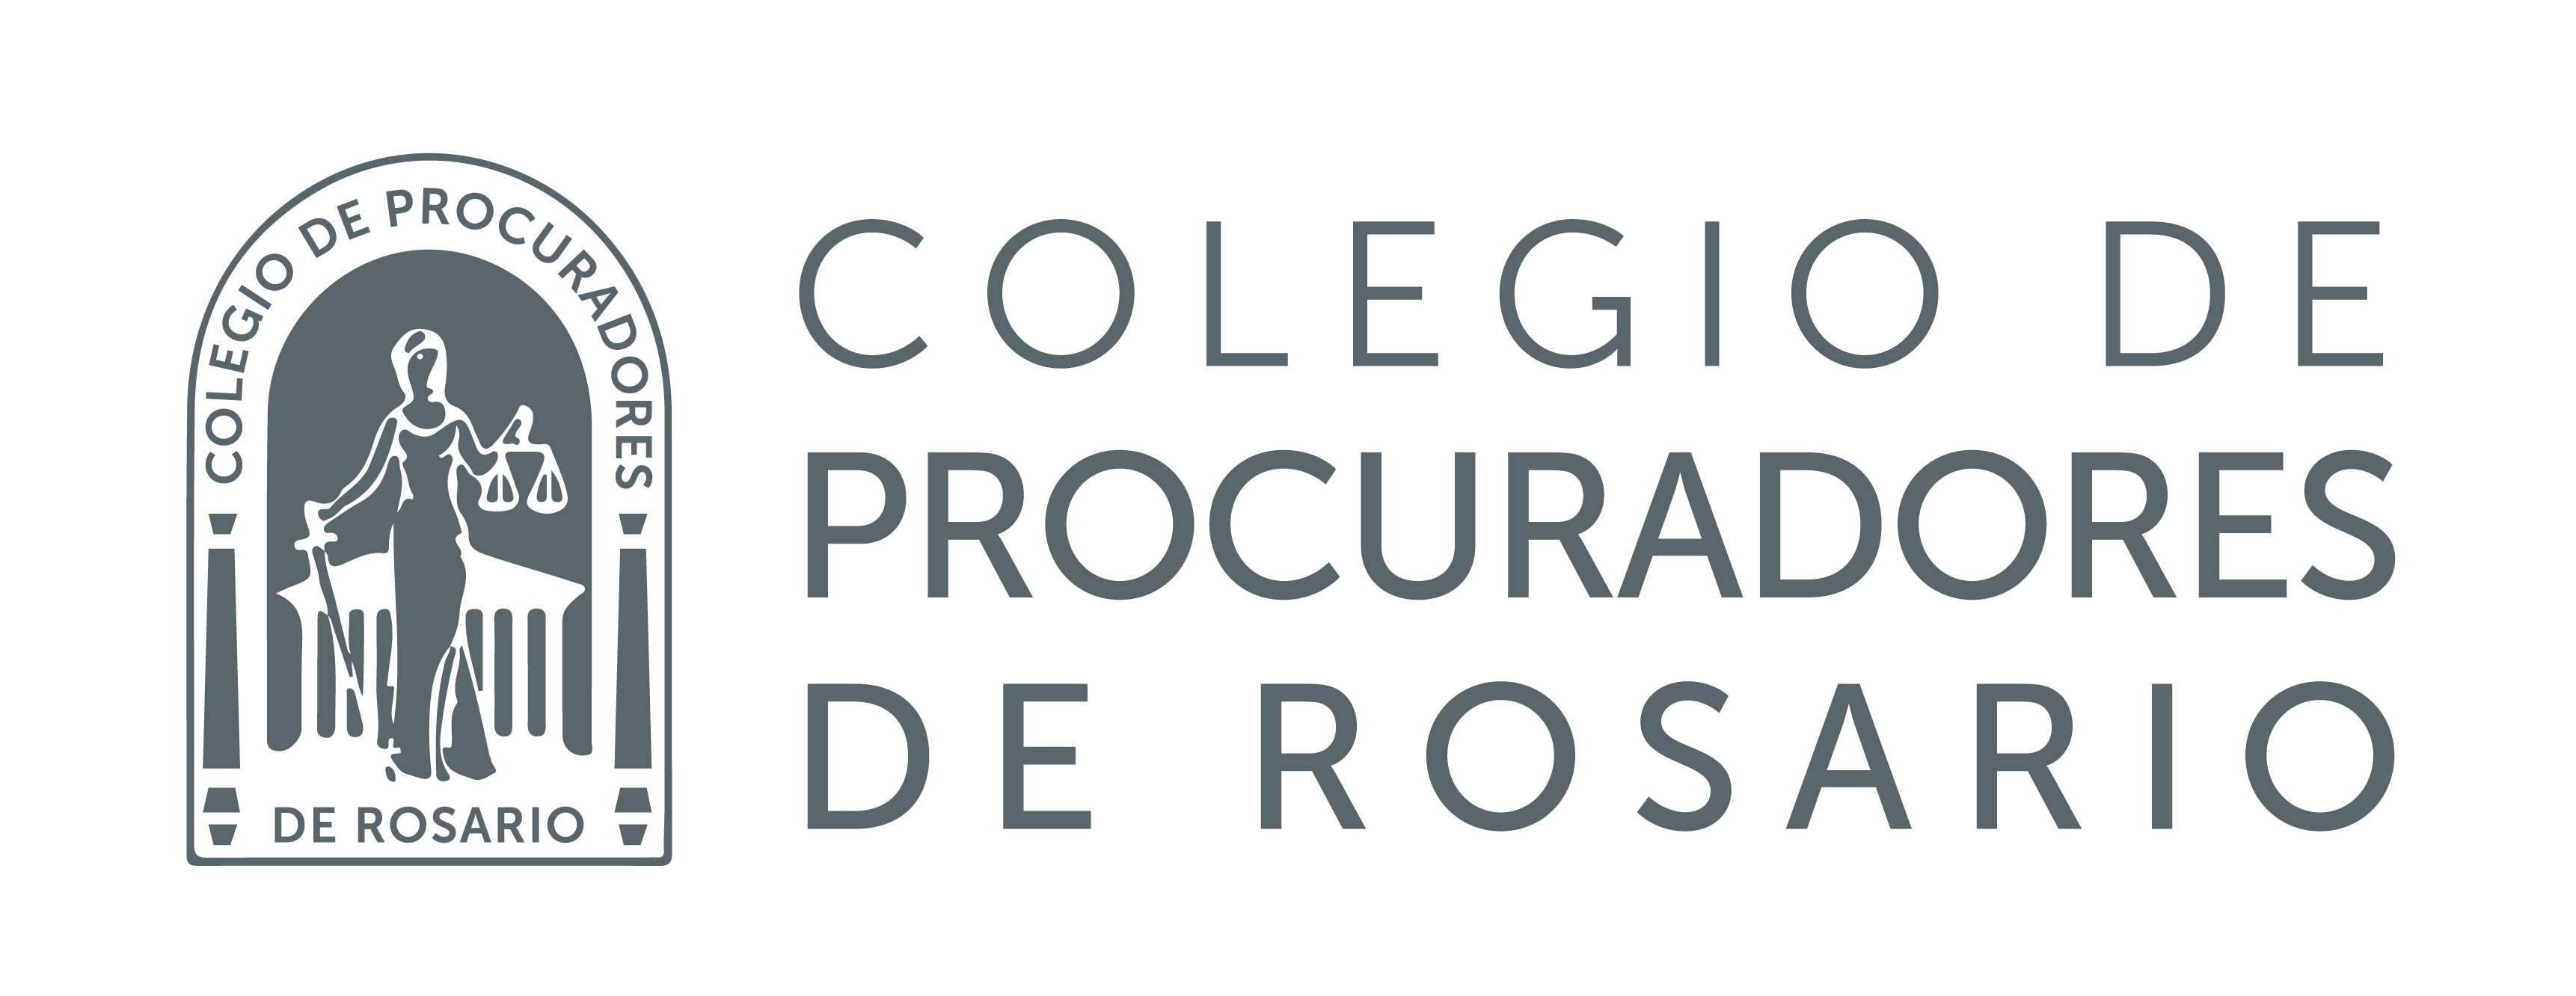 Colegio de Procuradores de Rosario